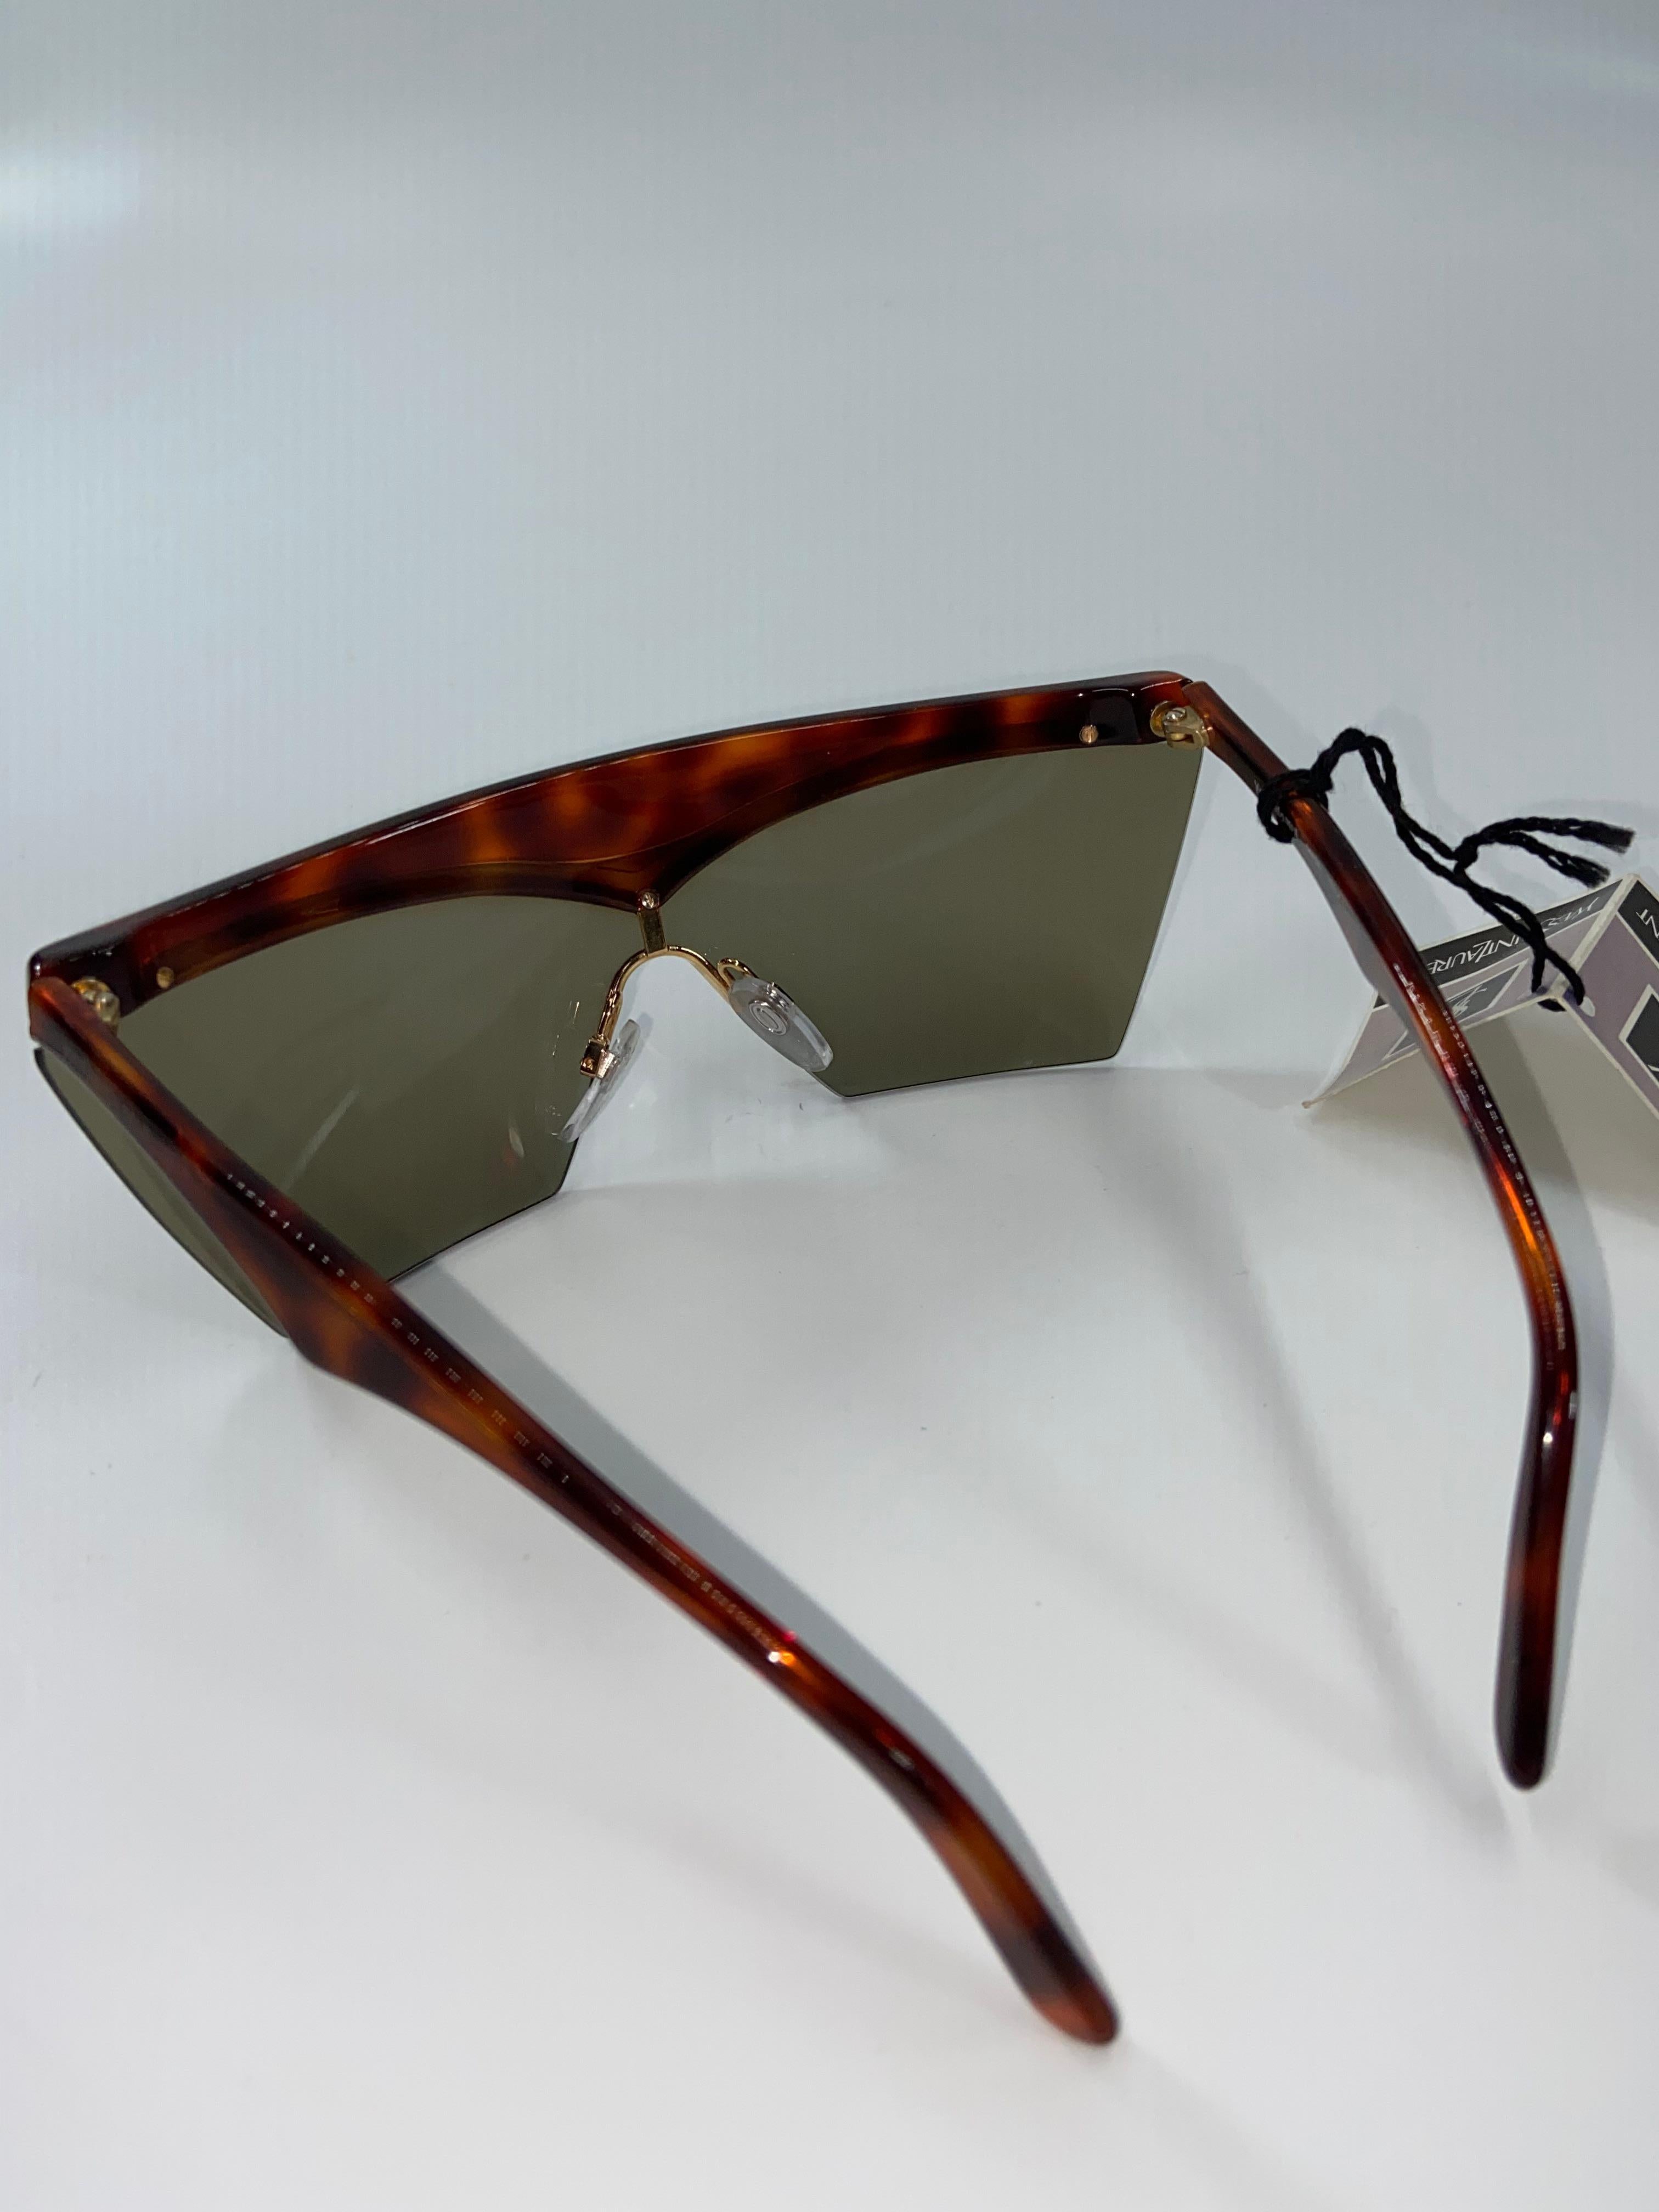 Yves Saint Laurent Tortoise Shell Vintage Sunglasses 1